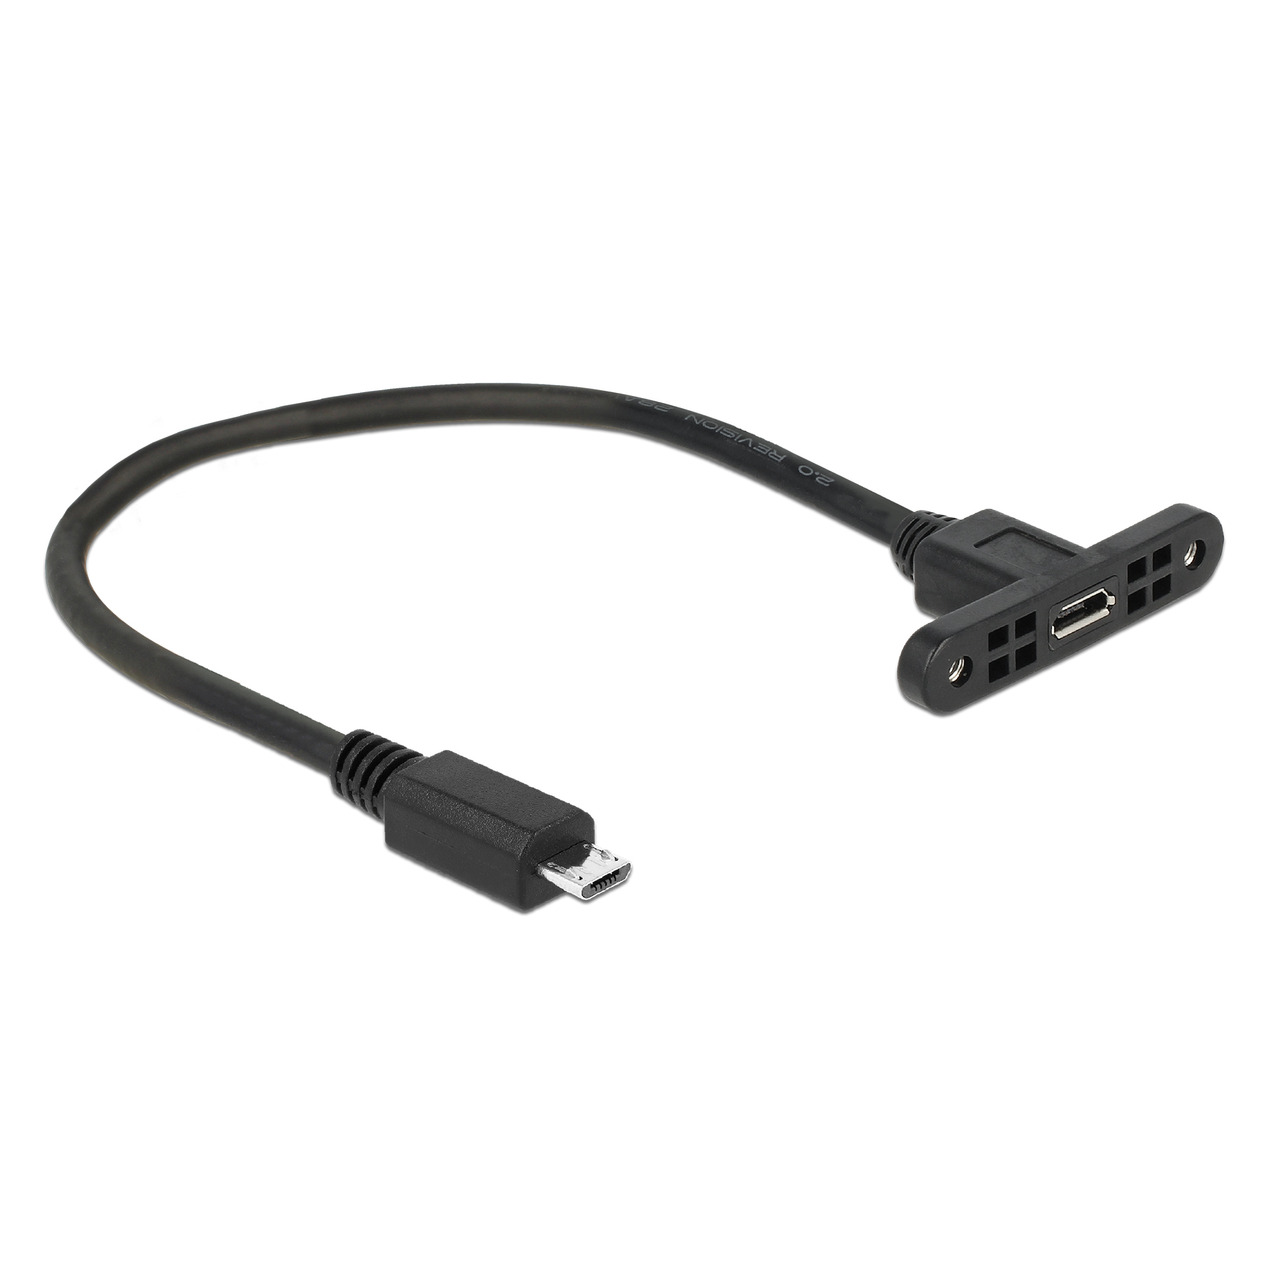 Delock USB-Adapter- Micro-USB-Buchse auf Micro-USB-Stecker mit Schraubfixierung- 25 cm